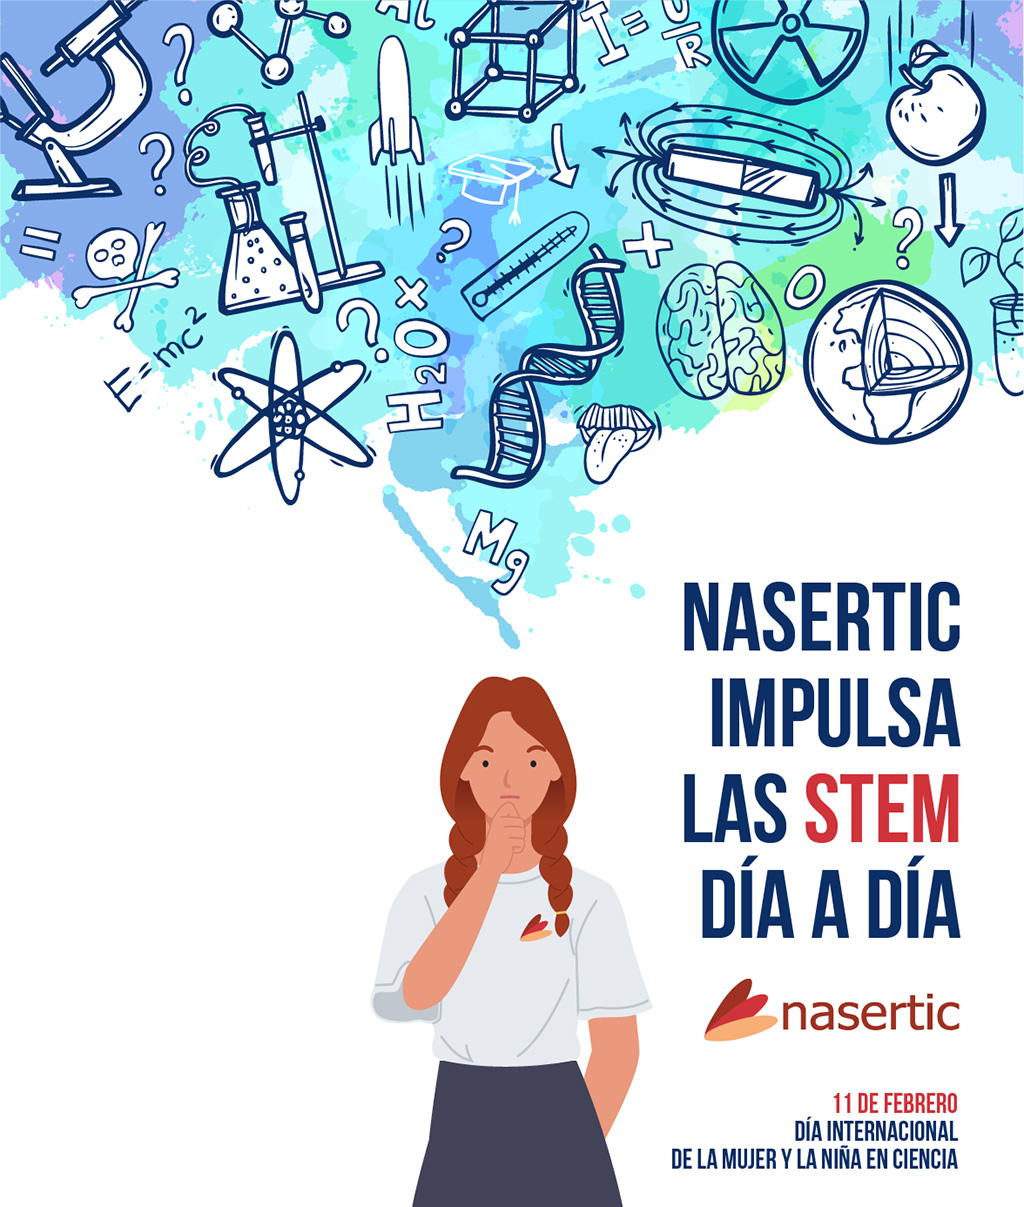 Cartel del día internacional de la mujer y la niña en la ciencia creado por NASERTIC, donde se ve una chica de la cual le salen de la cabeza multitud de iconos científicos